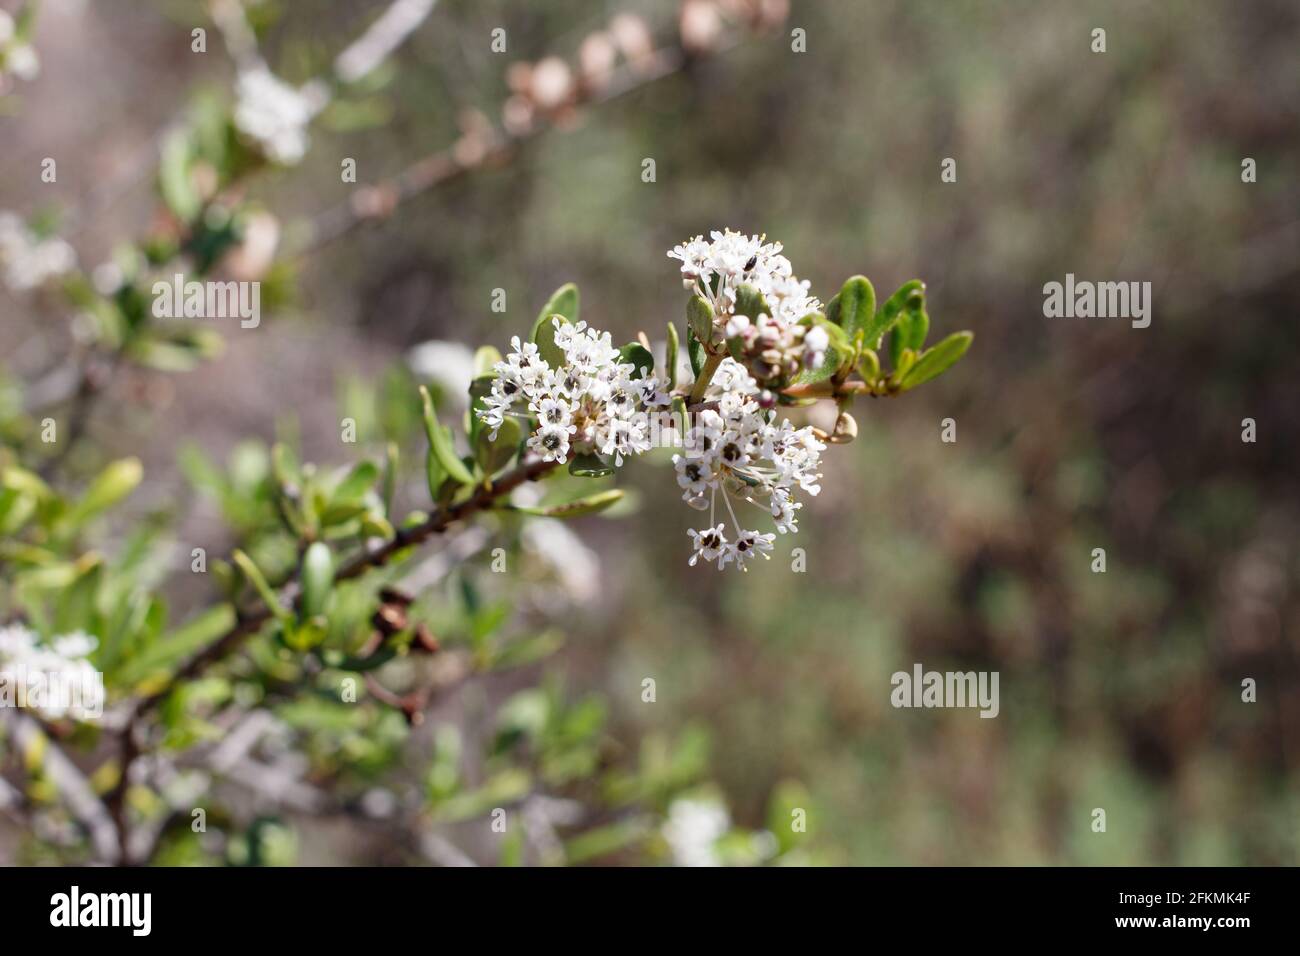 Axilläre und terminale Blütenstände von Wedgeleaf Buckbrush, Ceanothus Cuneatus, Rhamnaceae, in den Santa Monica Mountains beheimatet, Winter. Stockfoto